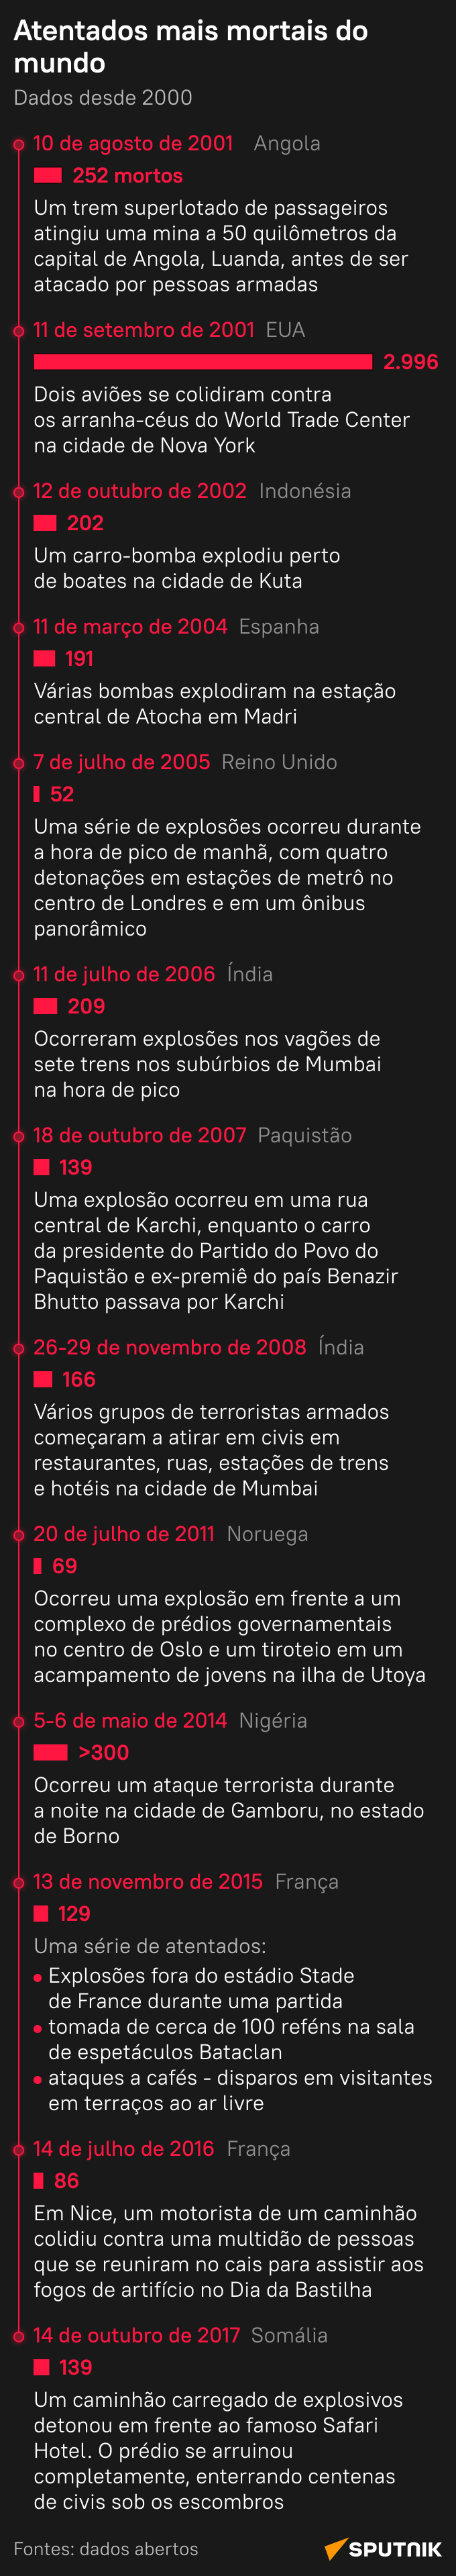 Terror como arma: relembre os maiores atentados do século XXI - Sputnik Brasil